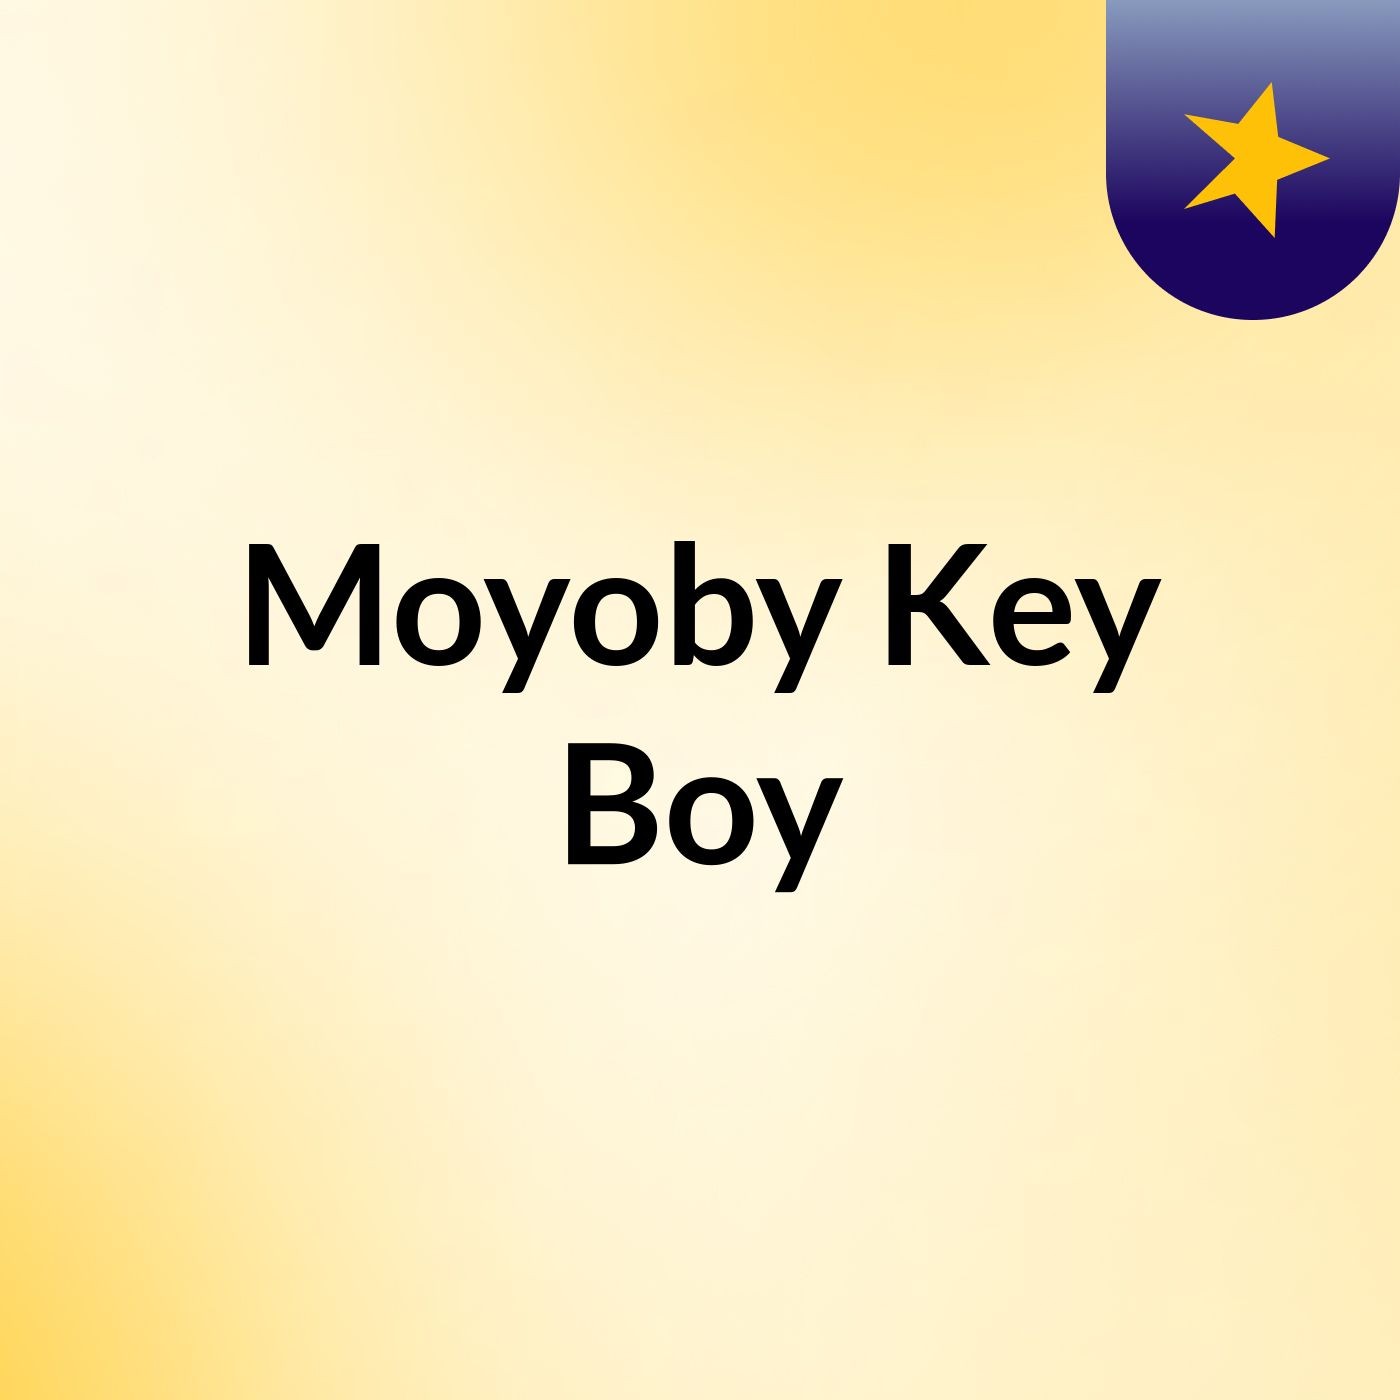 Moyoby Key Boy